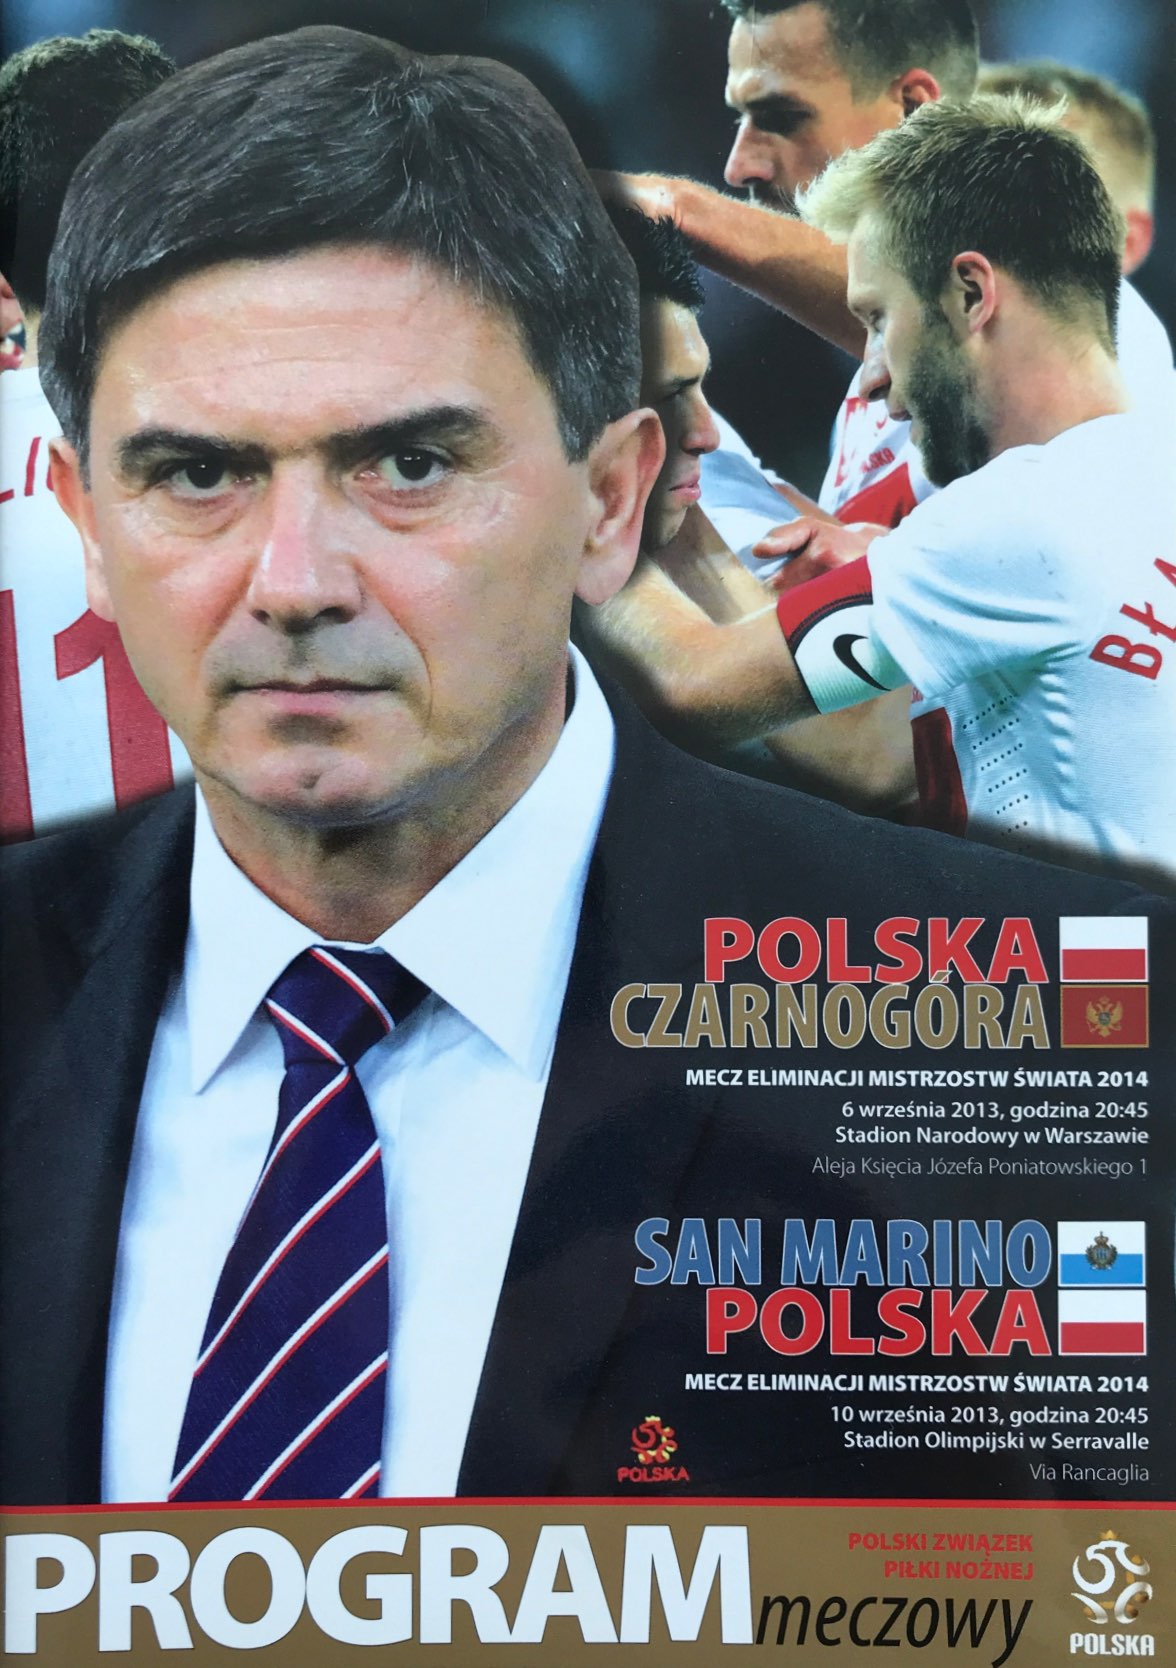 Program meczowy Polska - Czarnogóra 1:1 (06.09.2013) i San Marino - Polska 1:5 (10.09.2013).